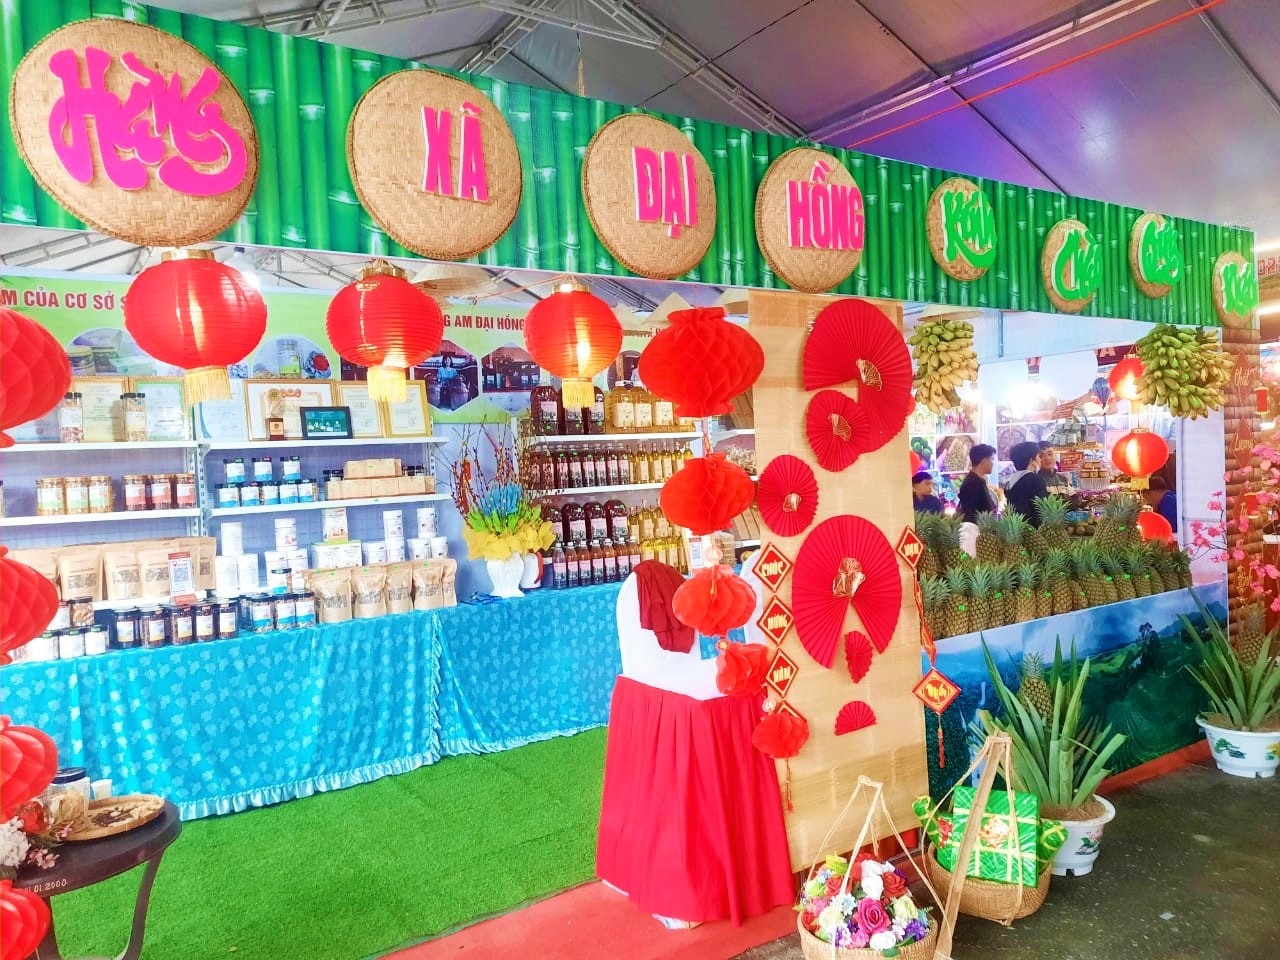 Đa dạng các sản phẩm, mặt hàng tiêu biểu của huyện Đại Lộc và các doanh nghiệp trong và ngoài tỉnh được bày bán tại Hội chợ Triển lãm.